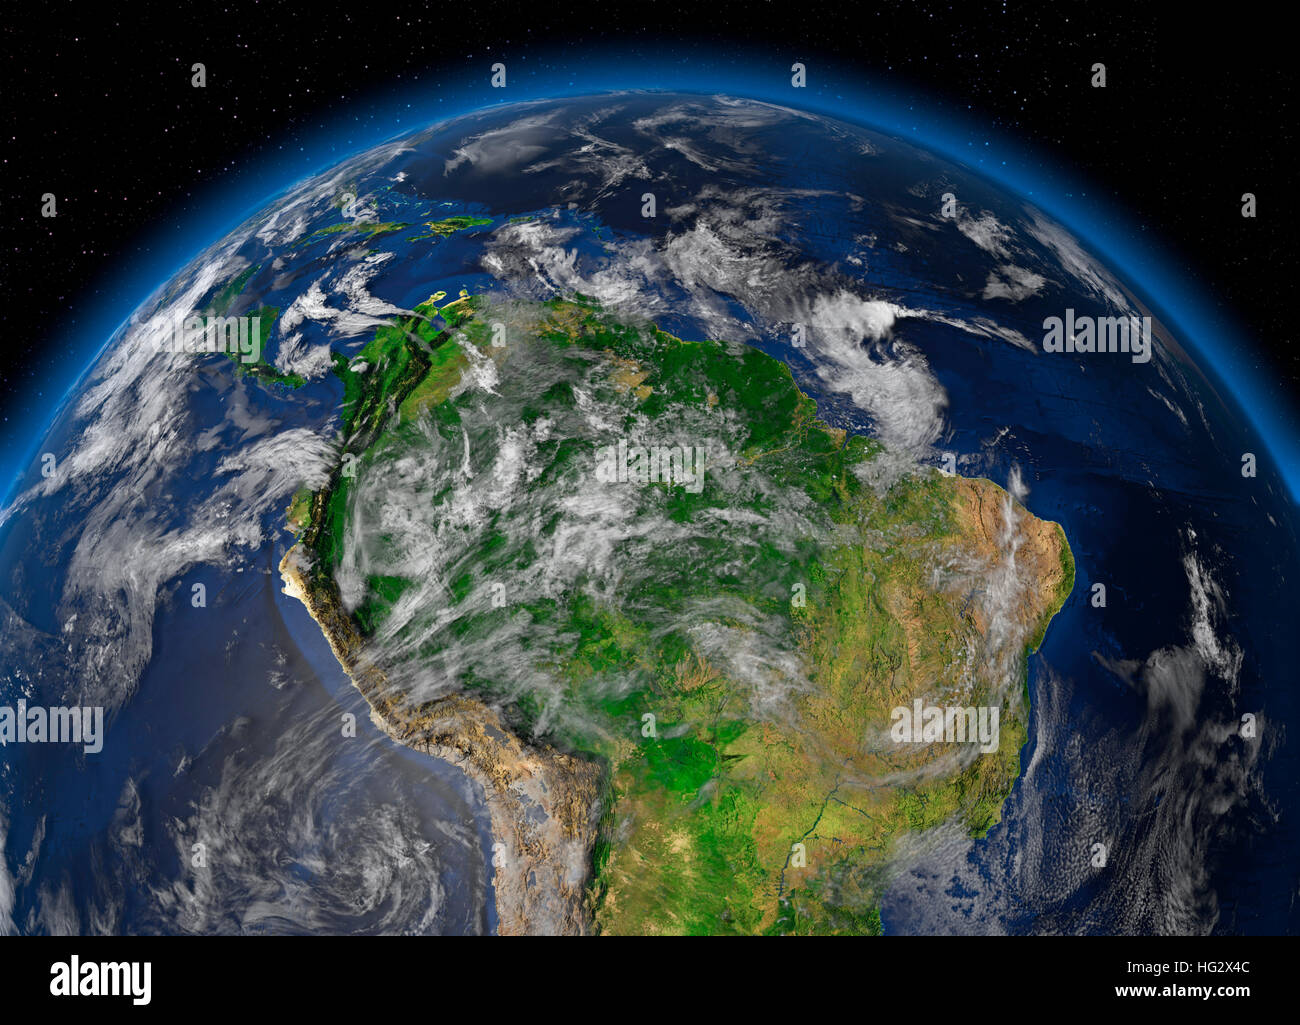 Terre vue de l'espace montrant forêt amazonienne. Illustration numérique réaliste y compris carte relief hill d'une ombre de terrain. Veuillez crédit Nasa. Banque D'Images